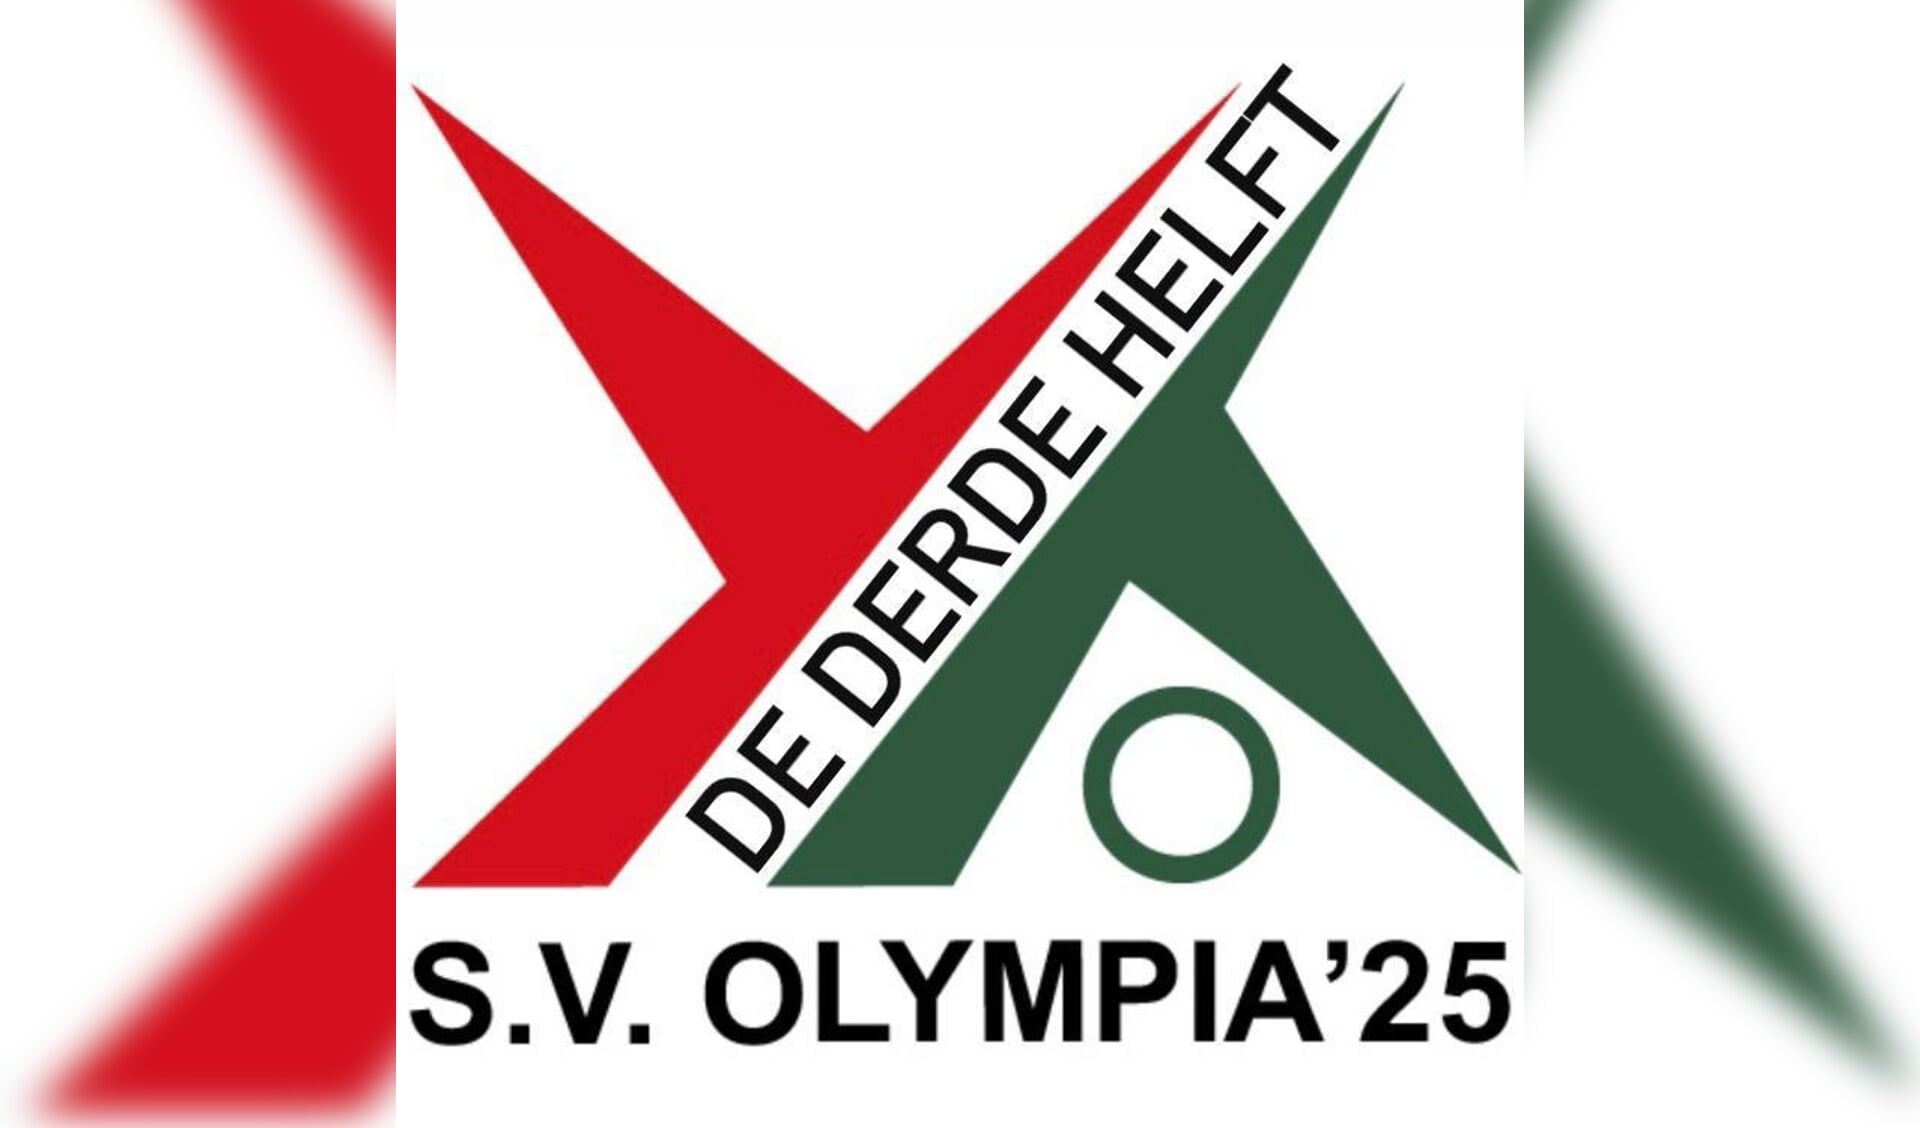 De Derde Helft bij SV Olympia elke week van 14:00-16:00 uur